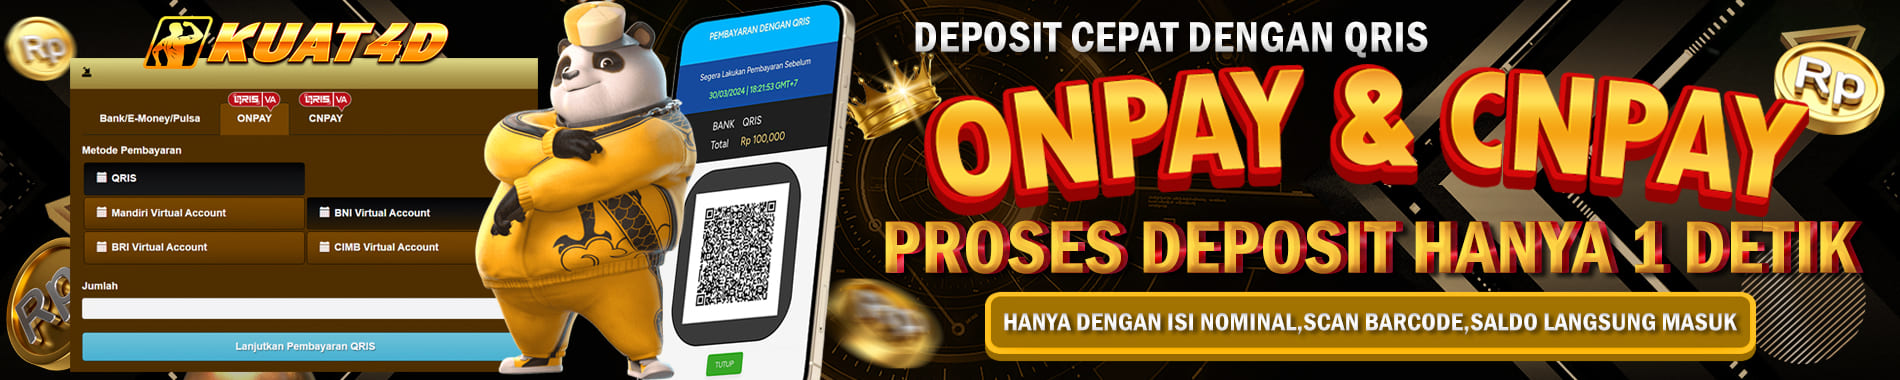 kuat4d deposit cepat dengan onpay dan cnpay